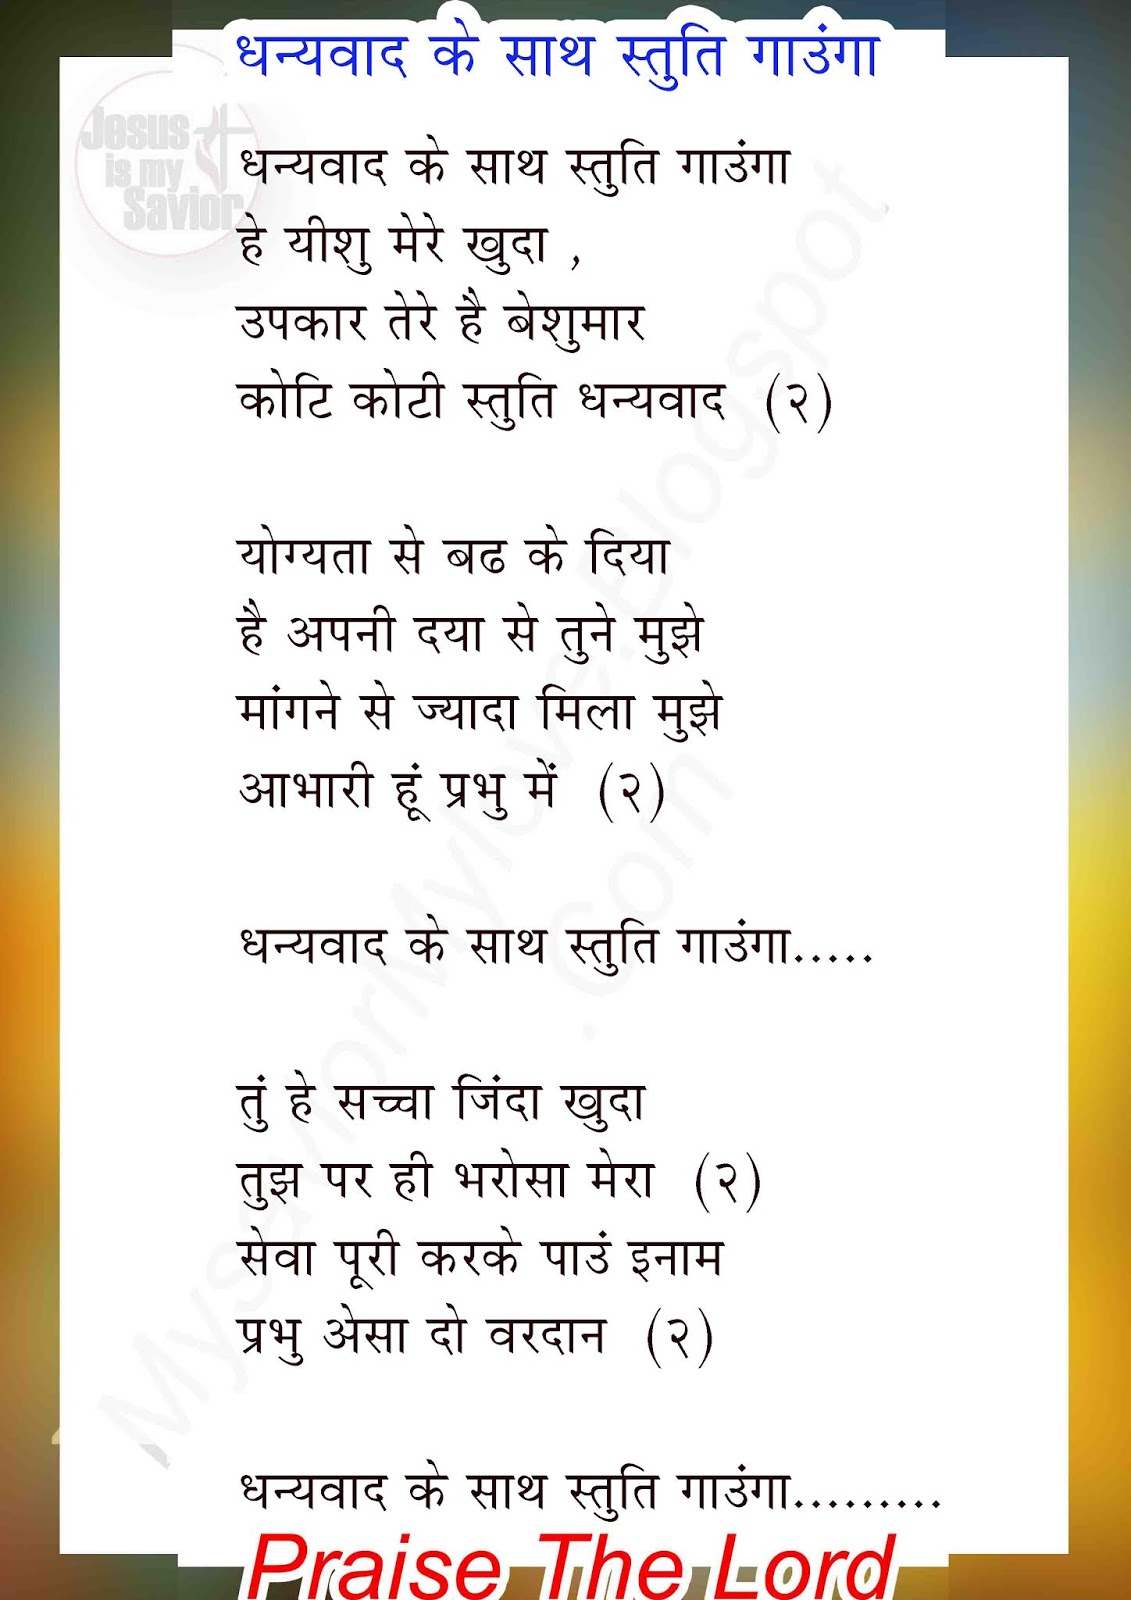 Dhanyavad Ke Sath Stuti Gaunga Jesus song lyrics hindi ...